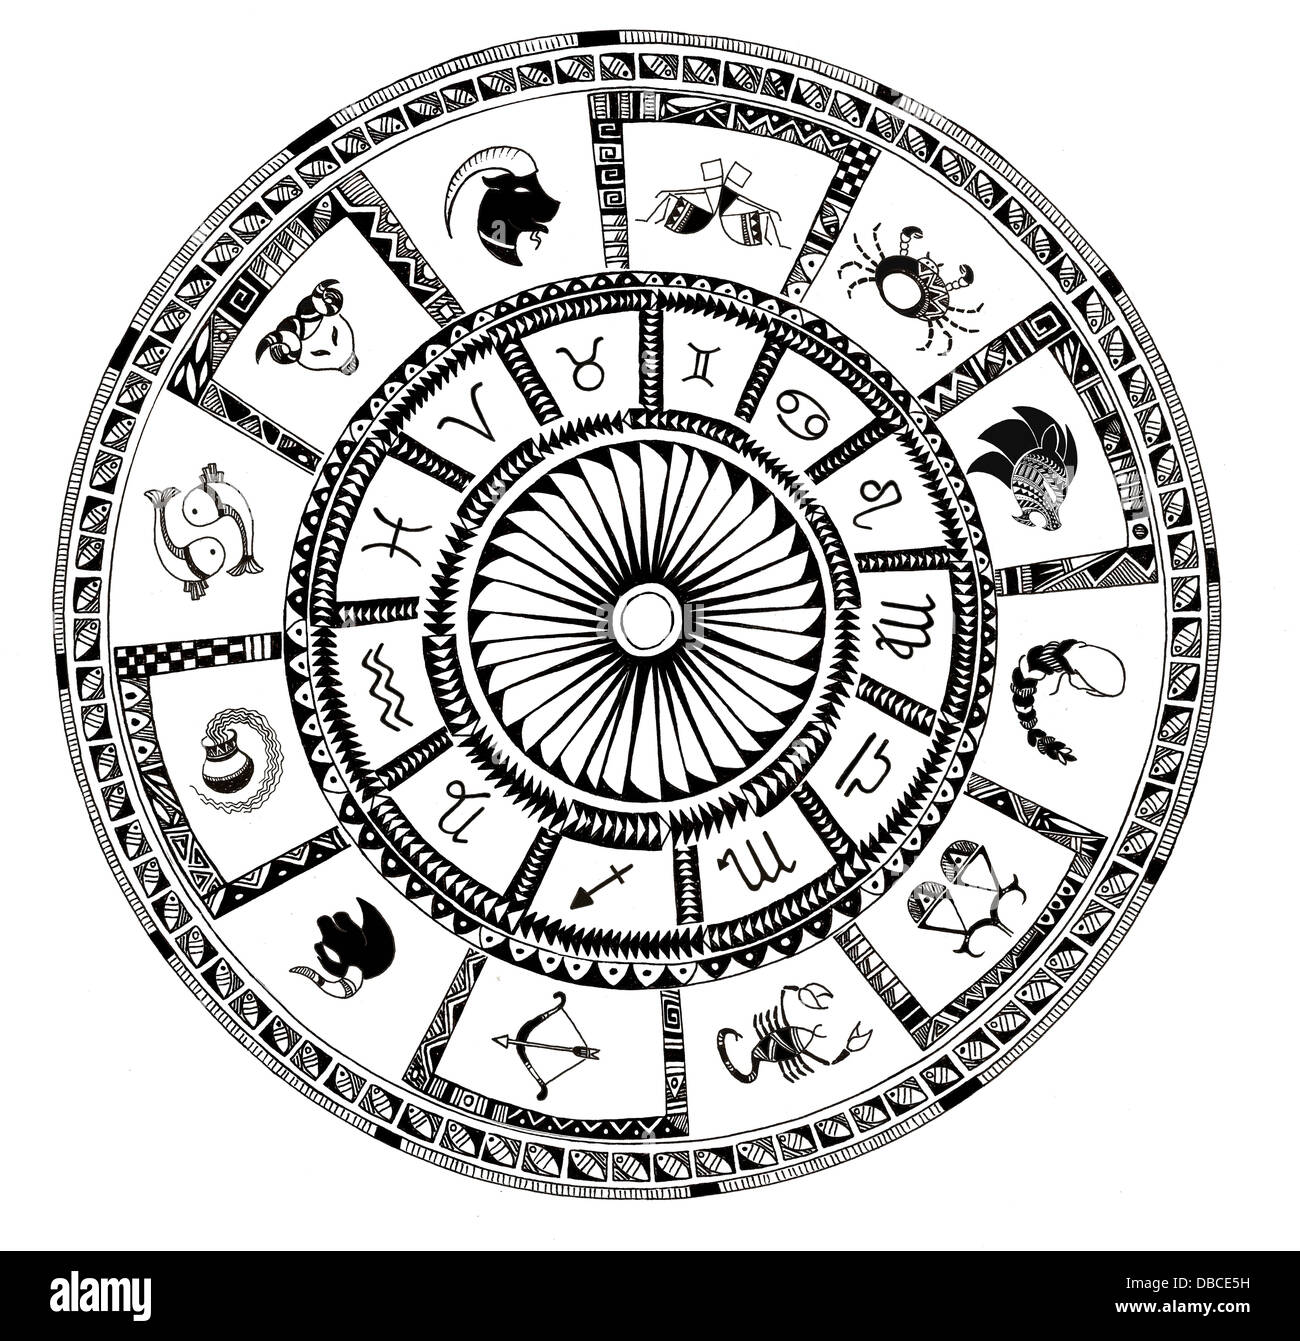 Illustration de signes du zodiaque sur fond blanc Banque D'Images